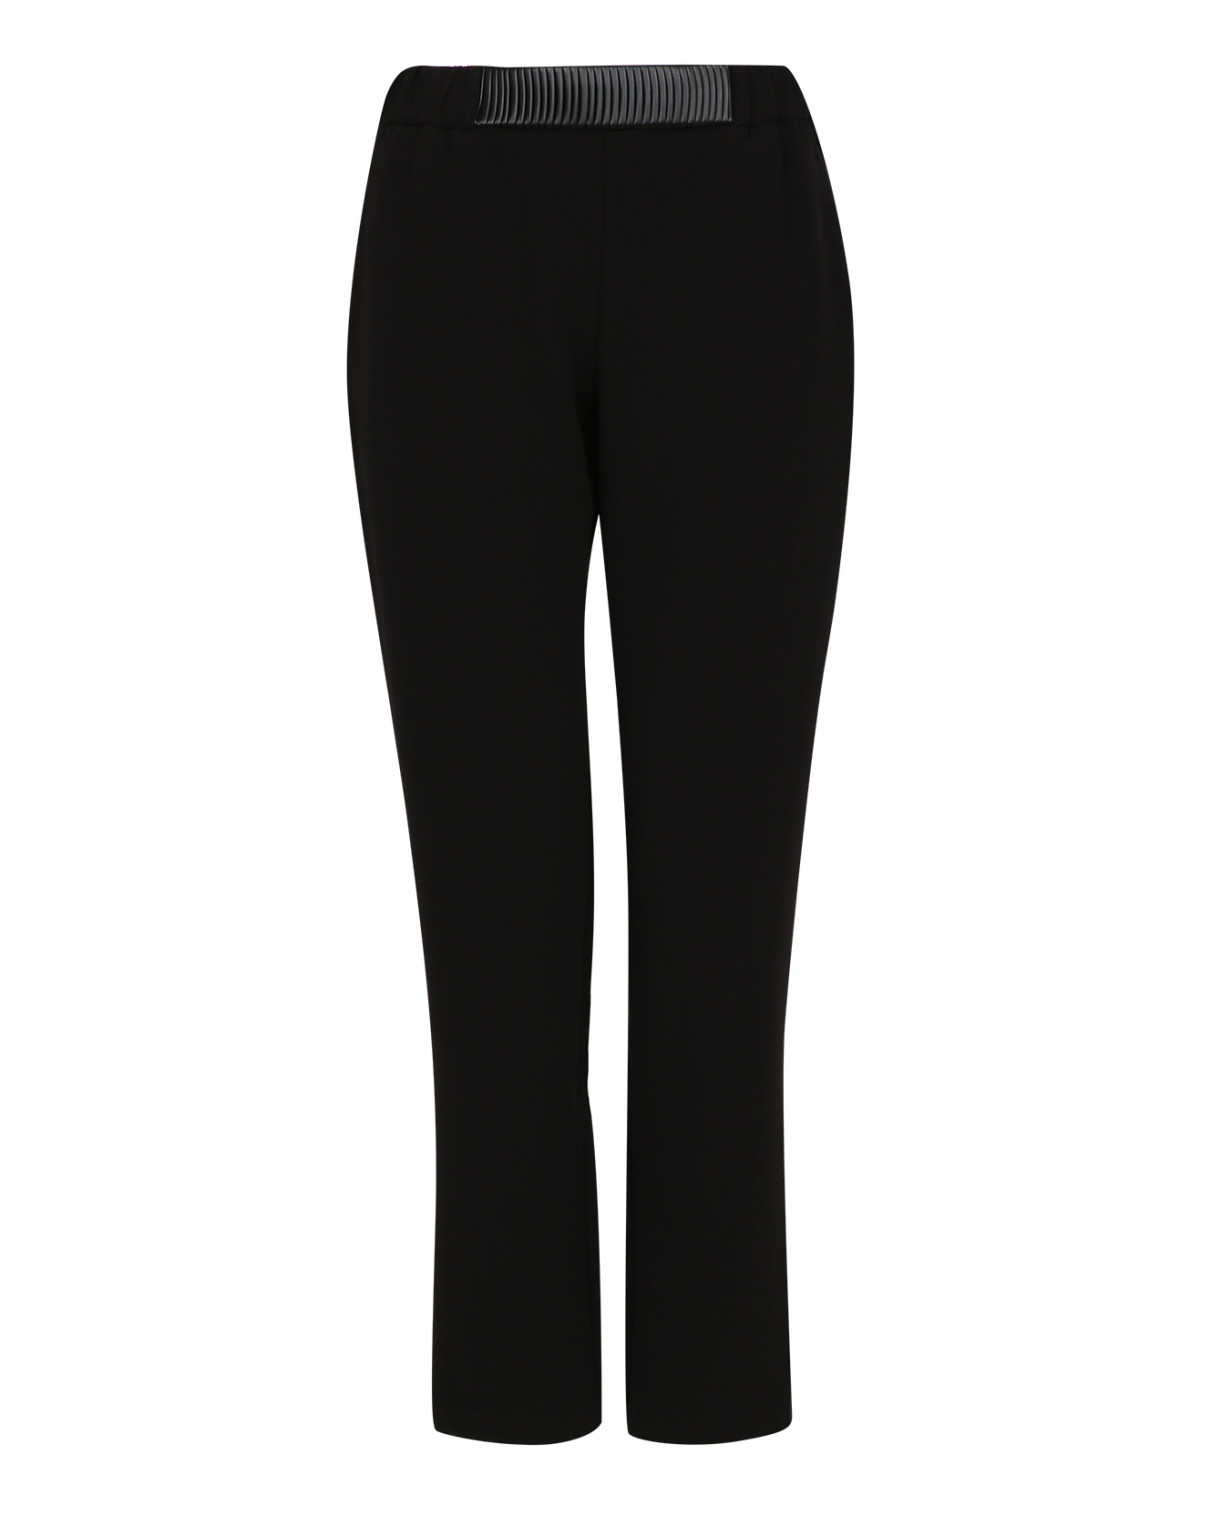 Узкие брюки с отделкой из кожи Suncoo  –  Общий вид  – Цвет:  Черный